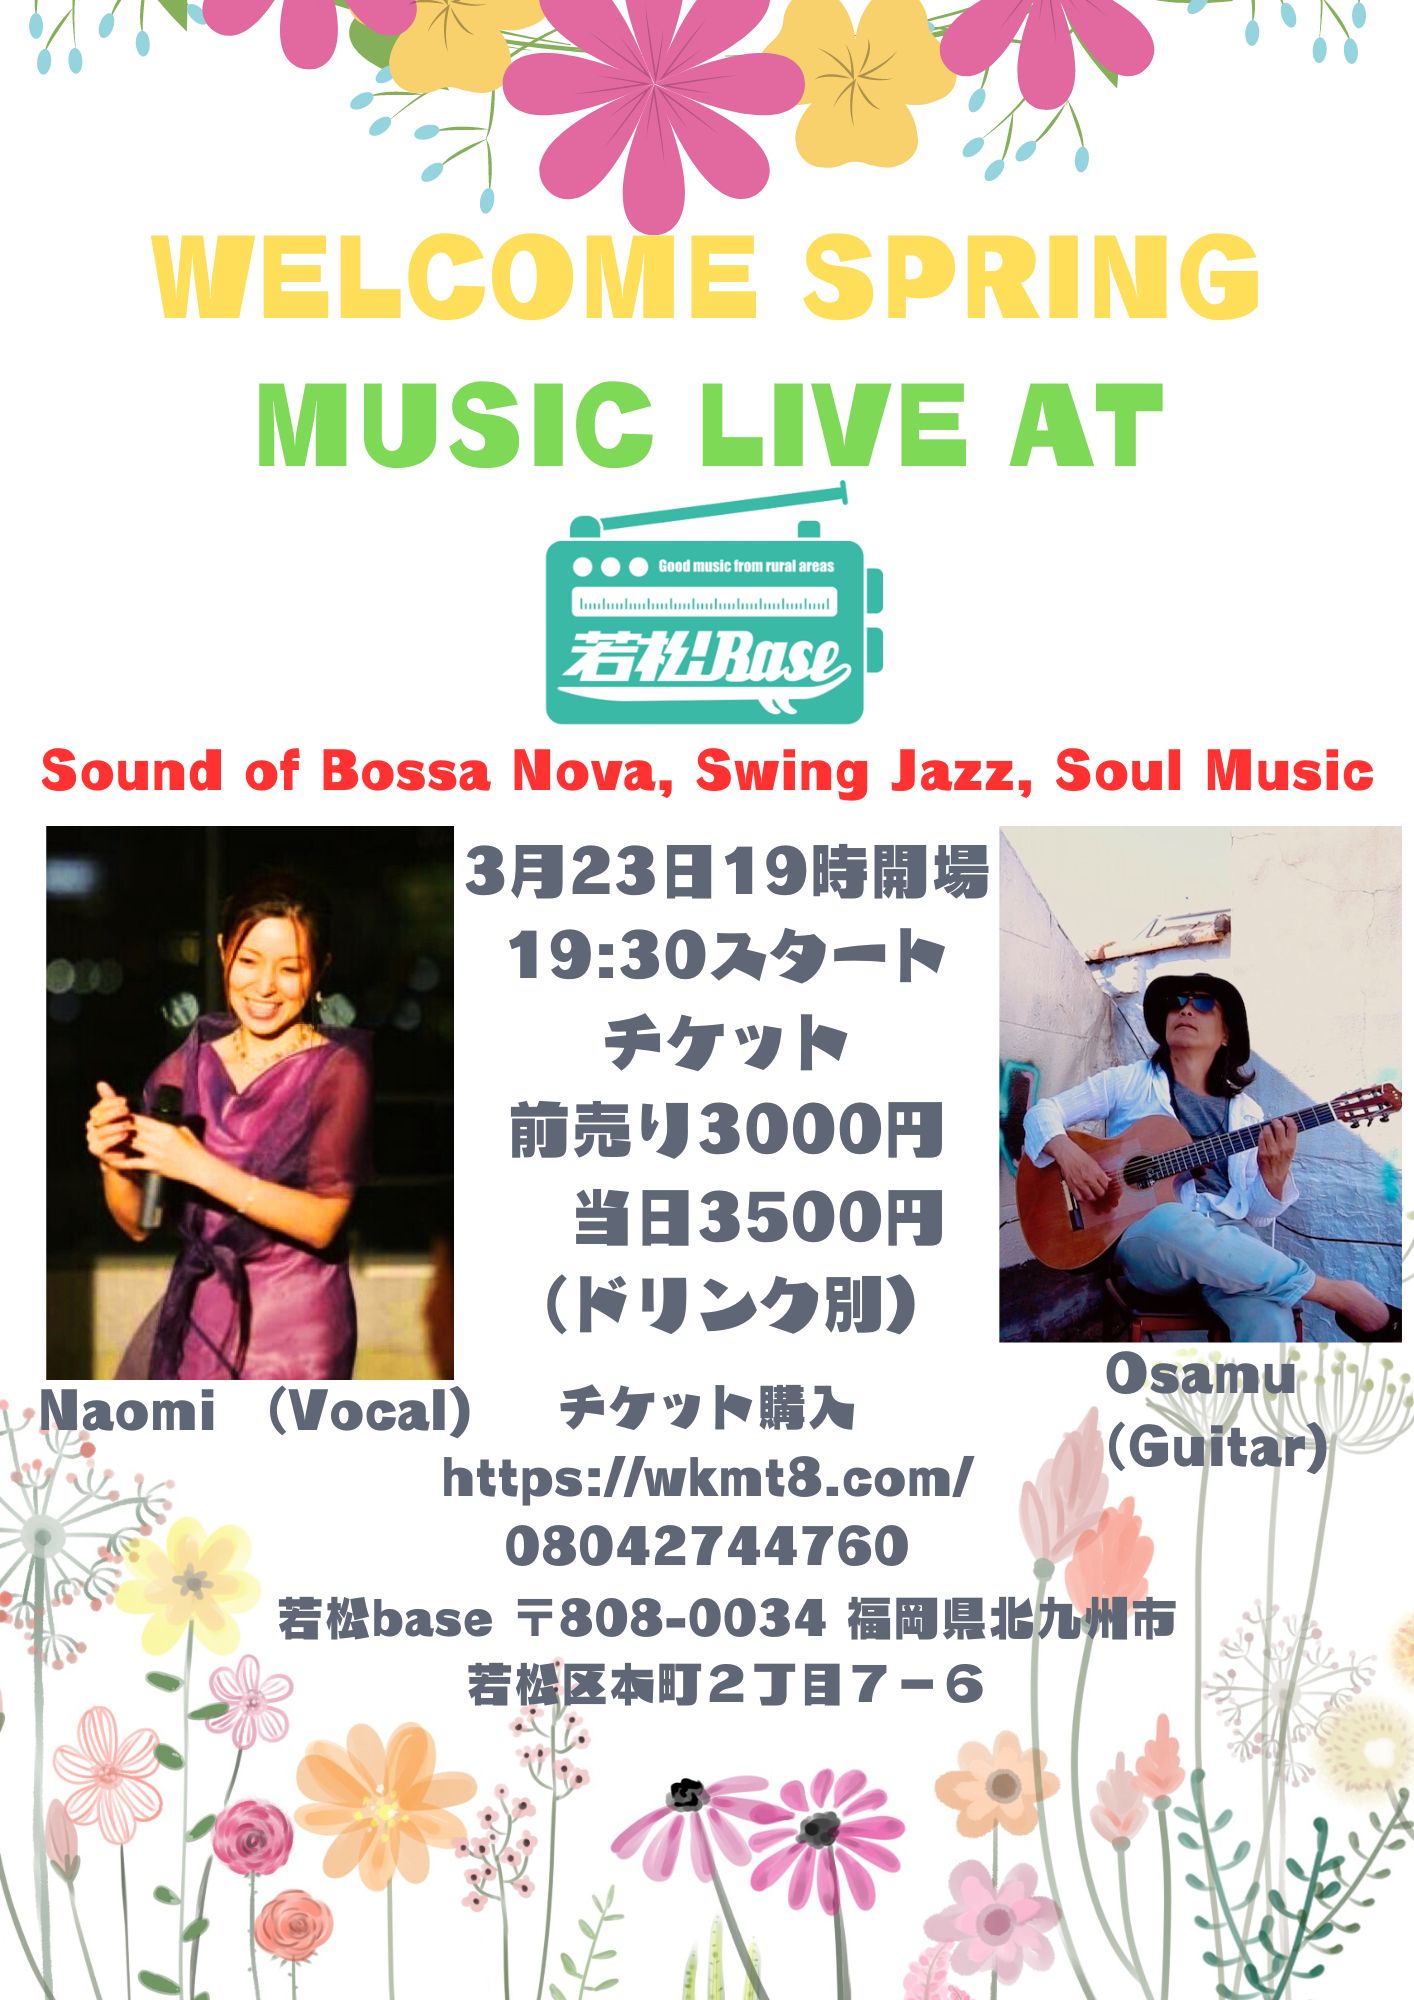 3/23(土)『welcome Spring Music Live at 若松Base』